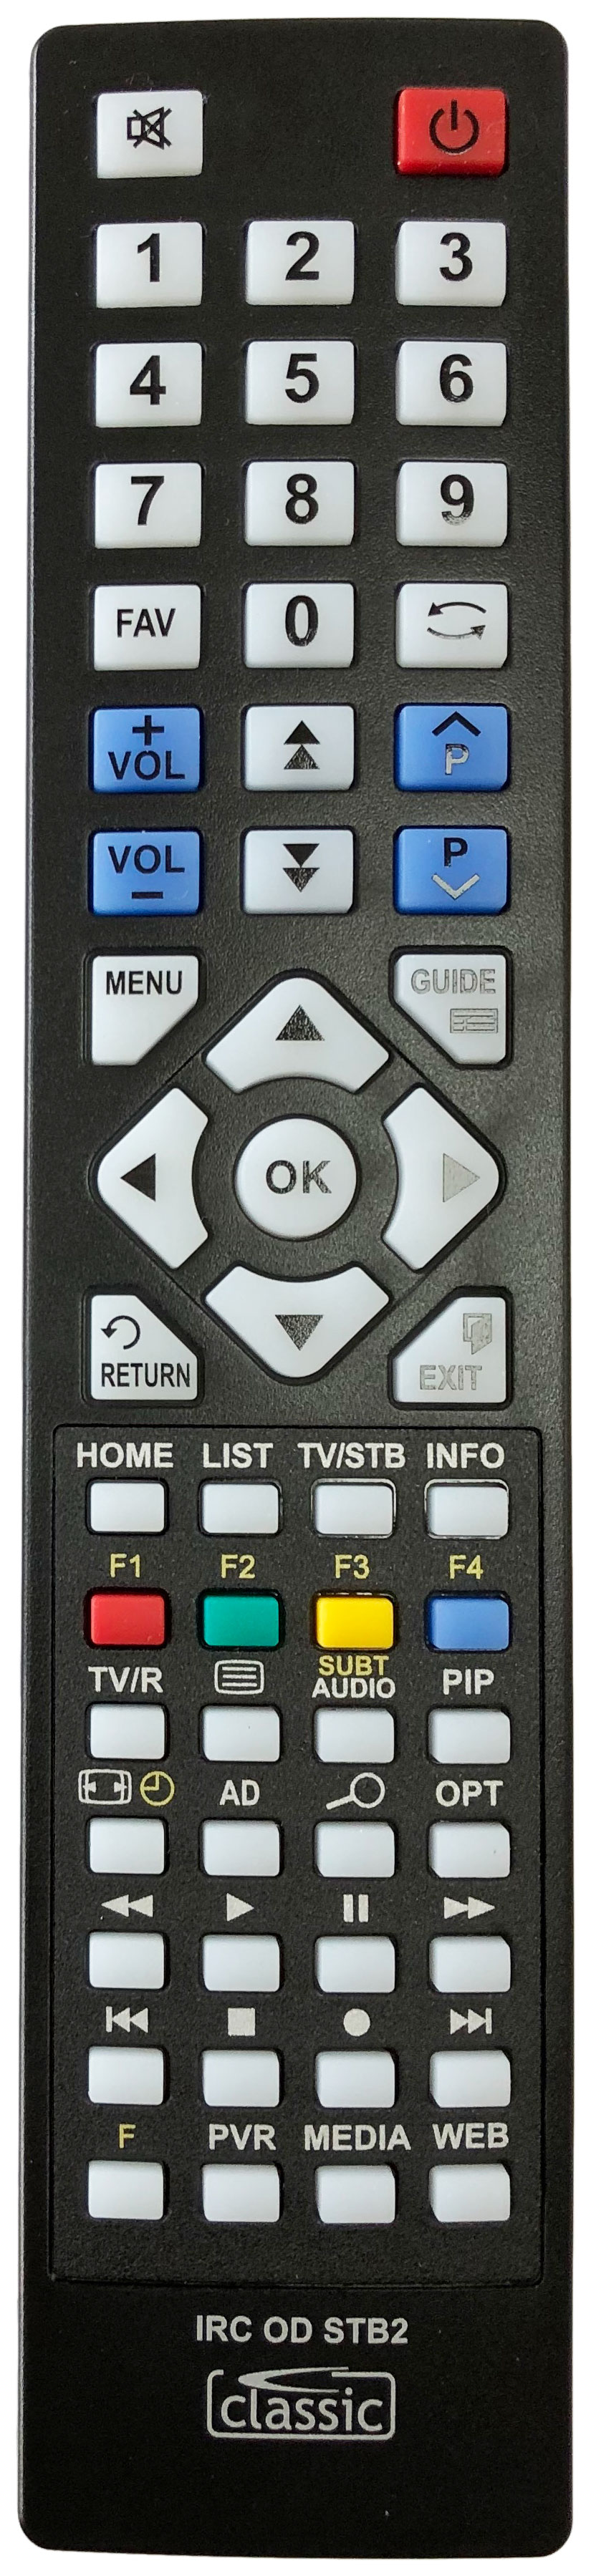 HUMAX CI-5100 Remote Control